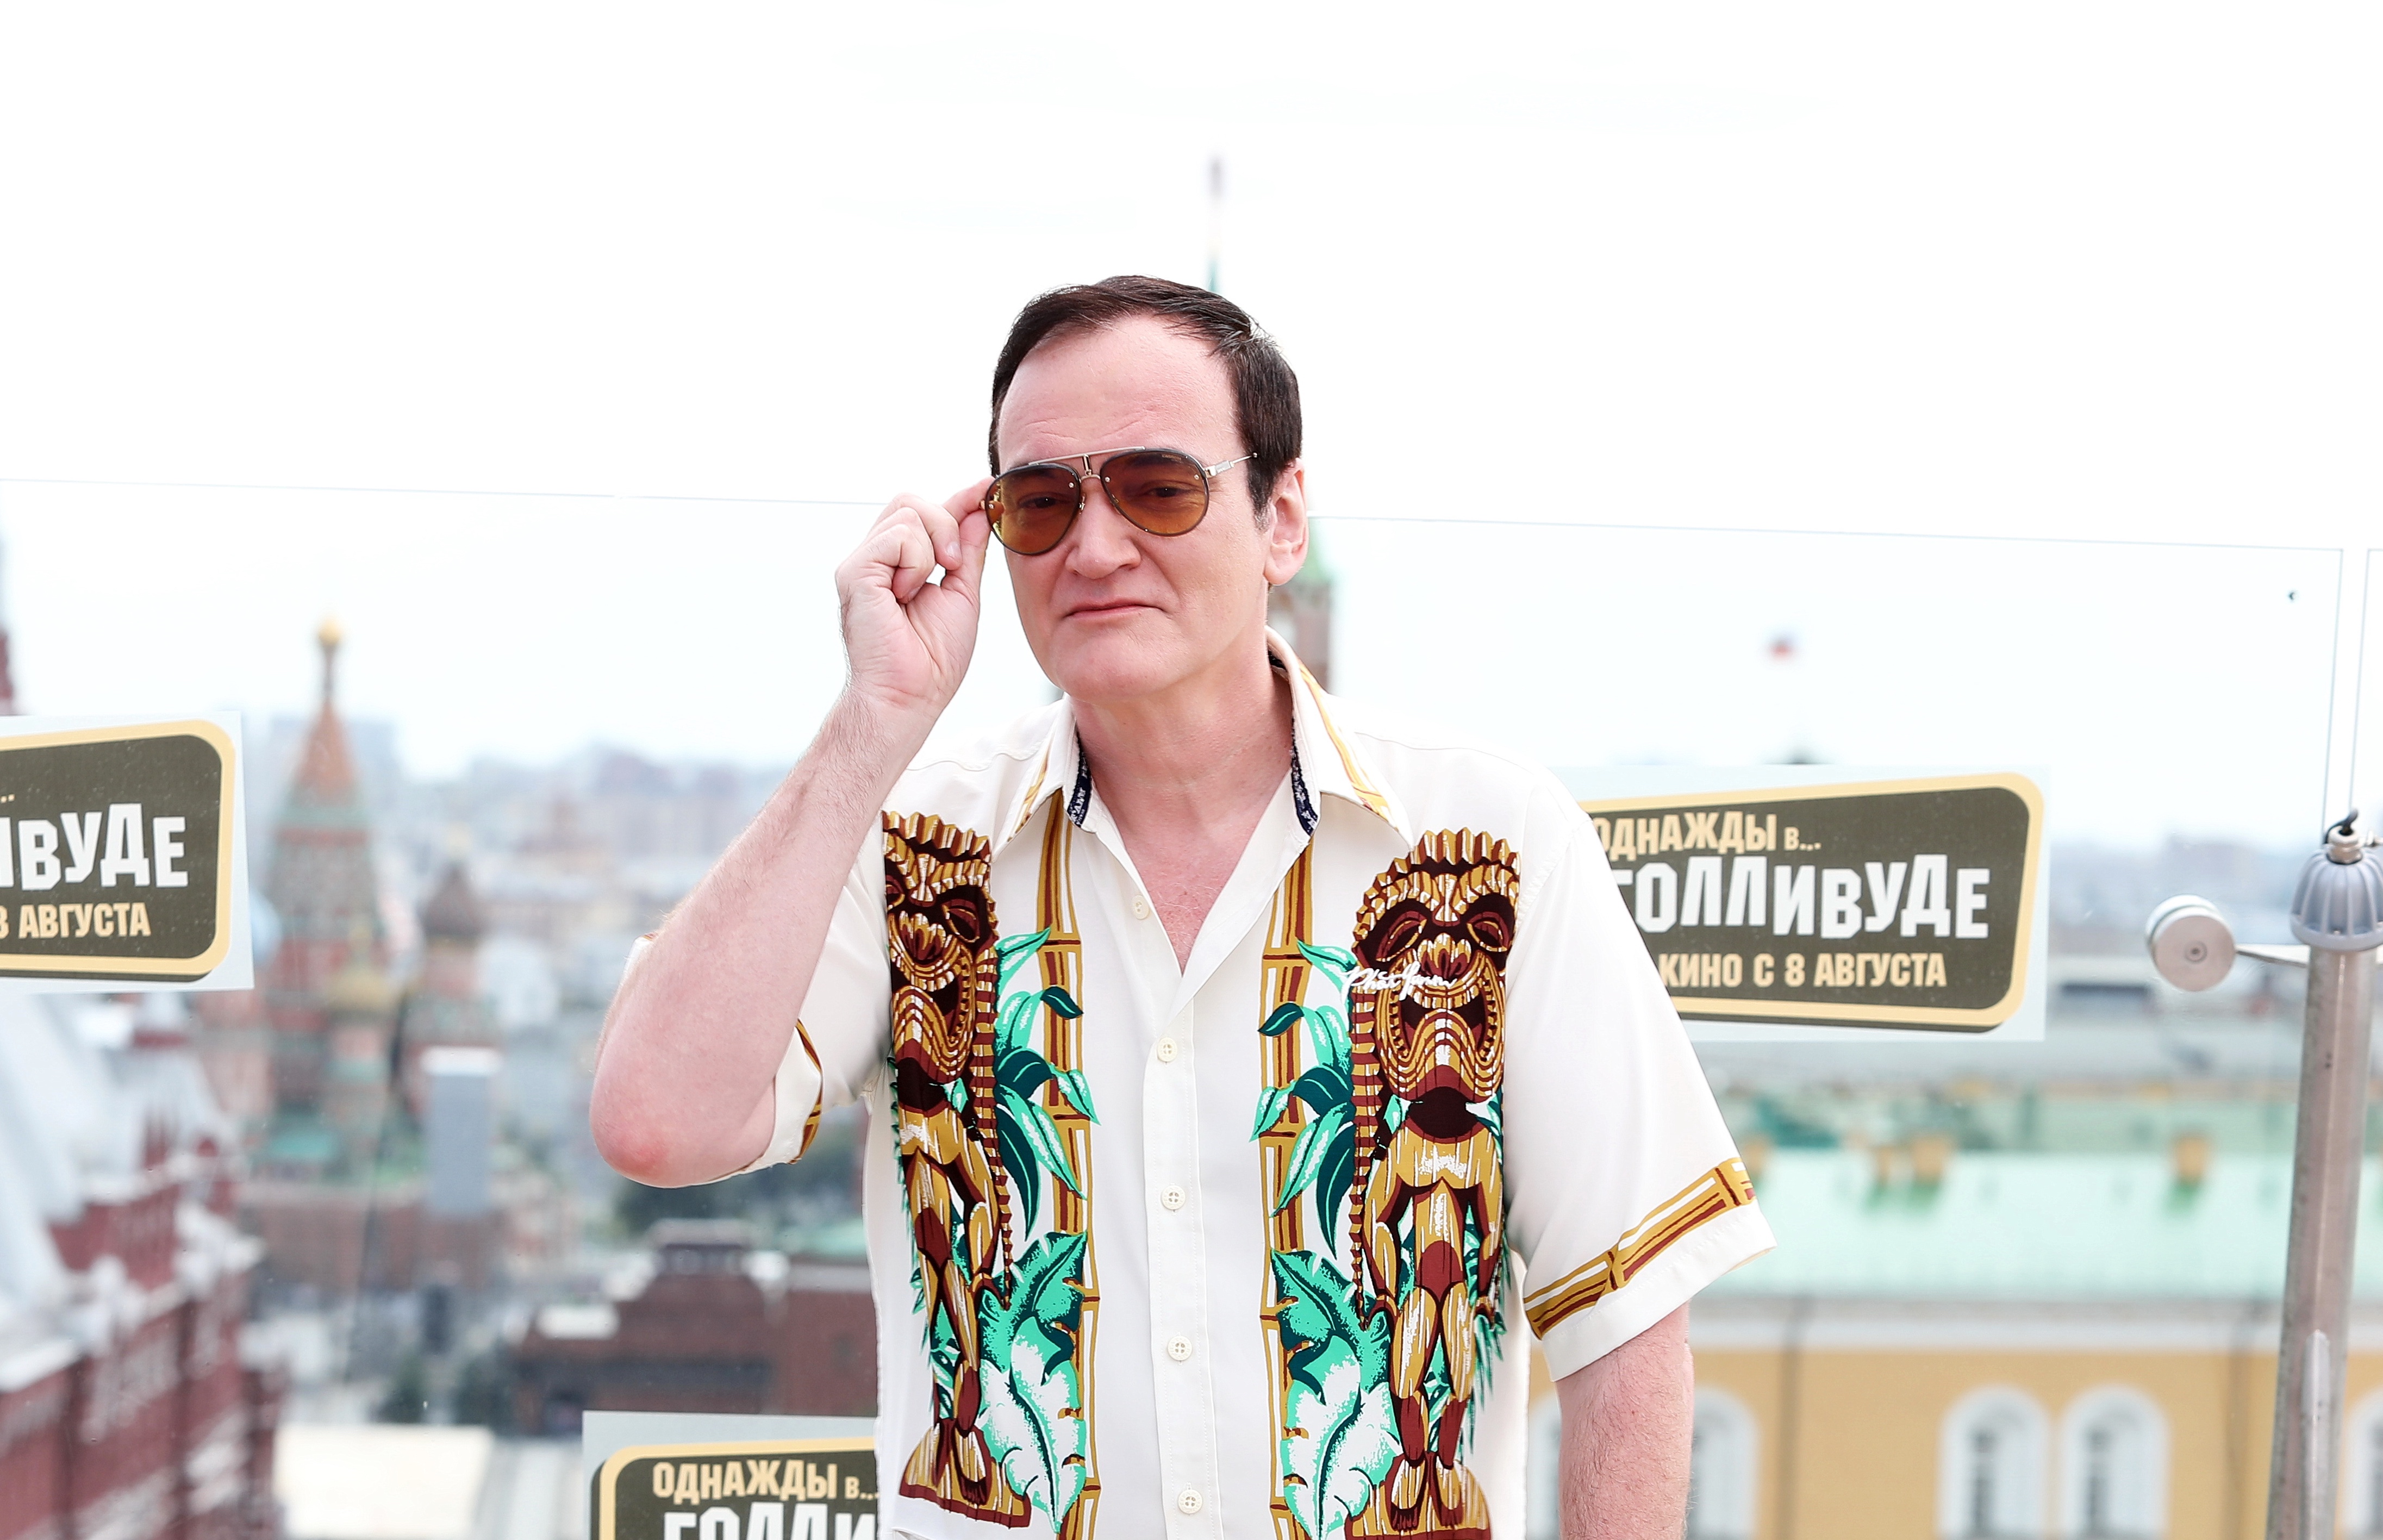 Begibt sich auf glattes Eis: Quentin Tarantino